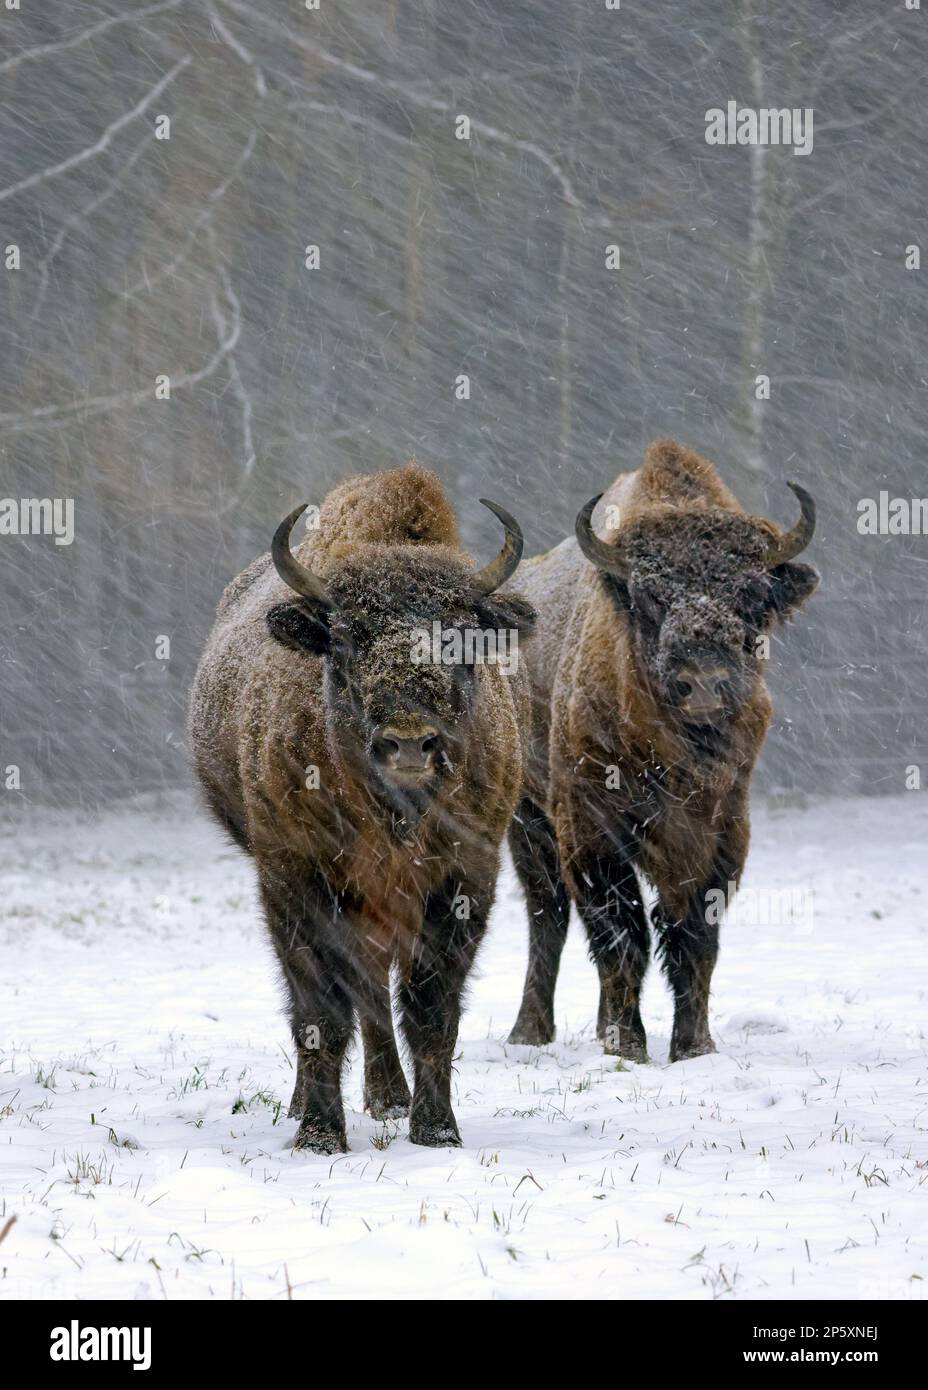 Bison européen, Wisient (Bison bonasus), deux wisients se tenant ensemble dans la dérive des neiges, vue de face, Allemagne Banque D'Images